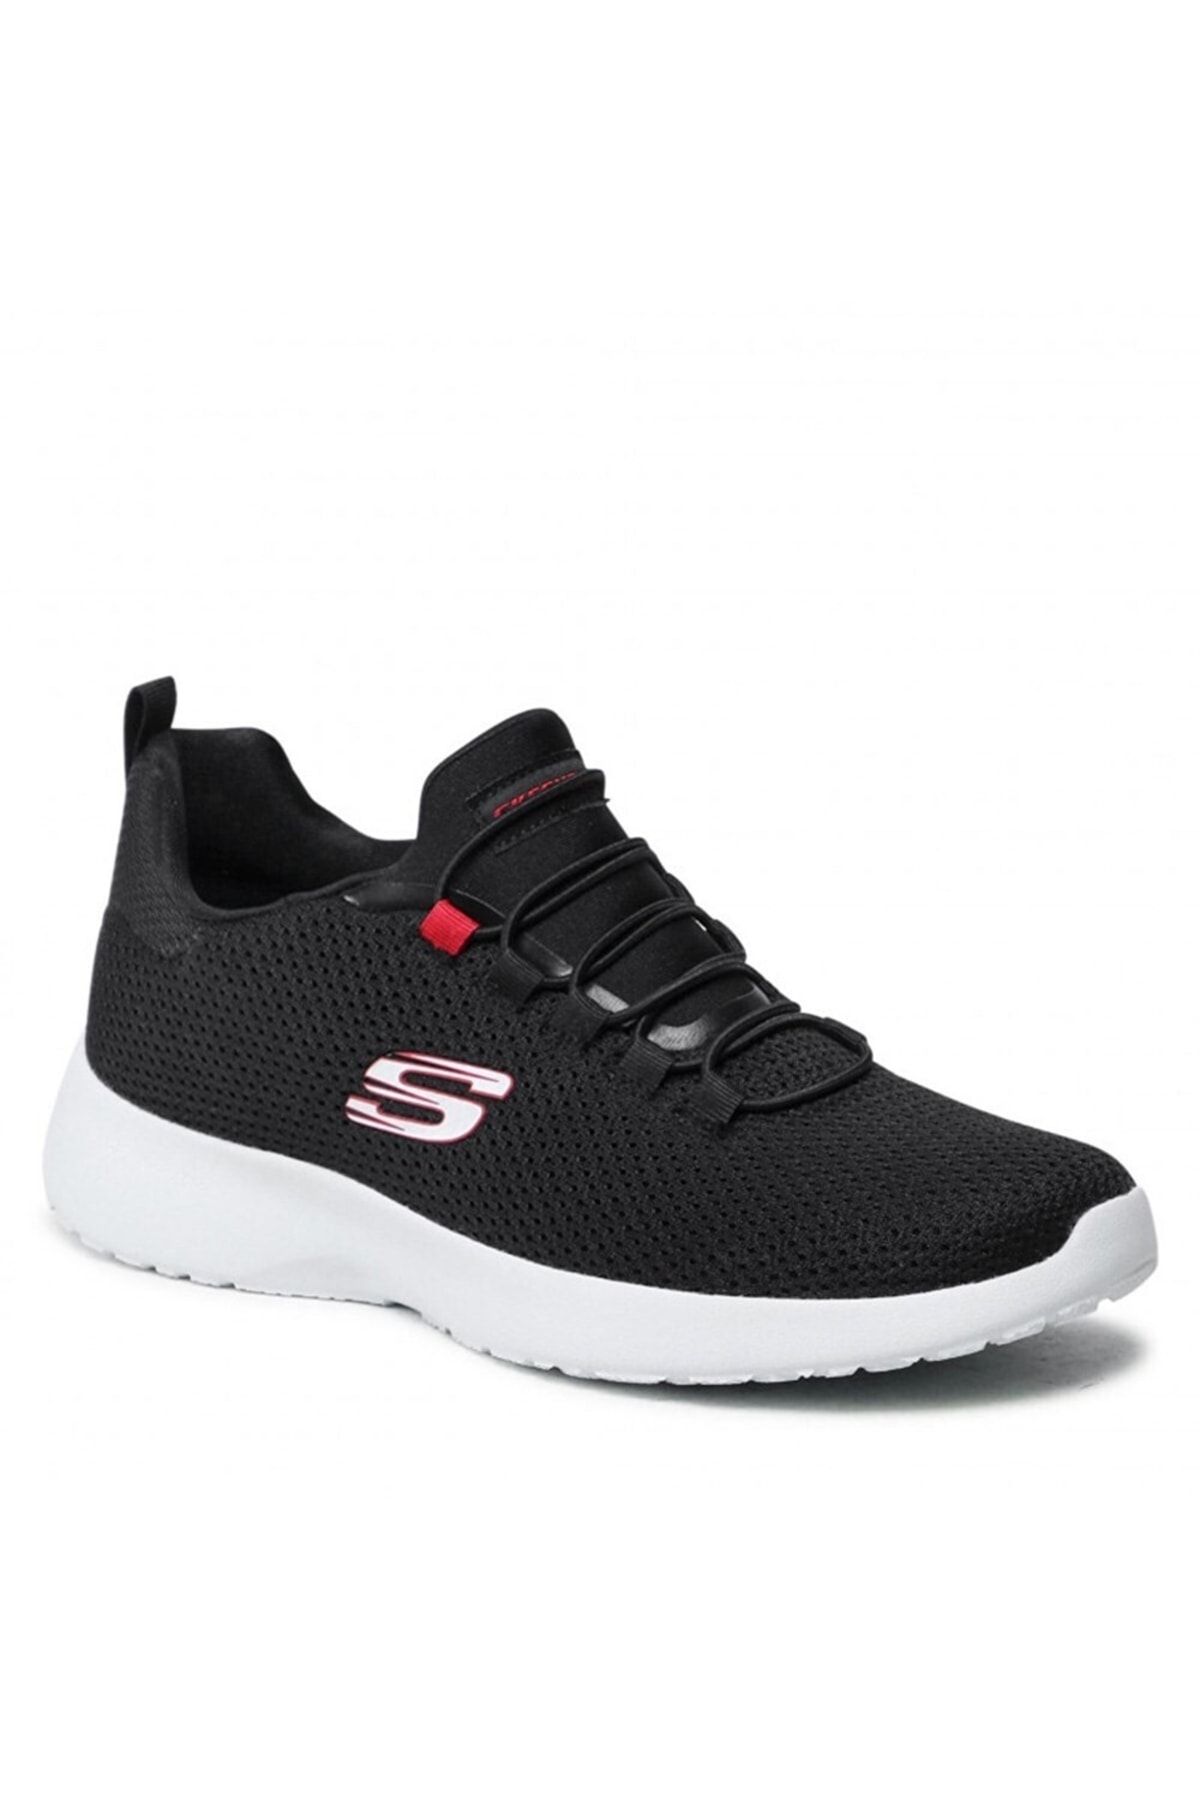 Skechers Erkek Siyah Spor Ayakkabı 58360-bkrd